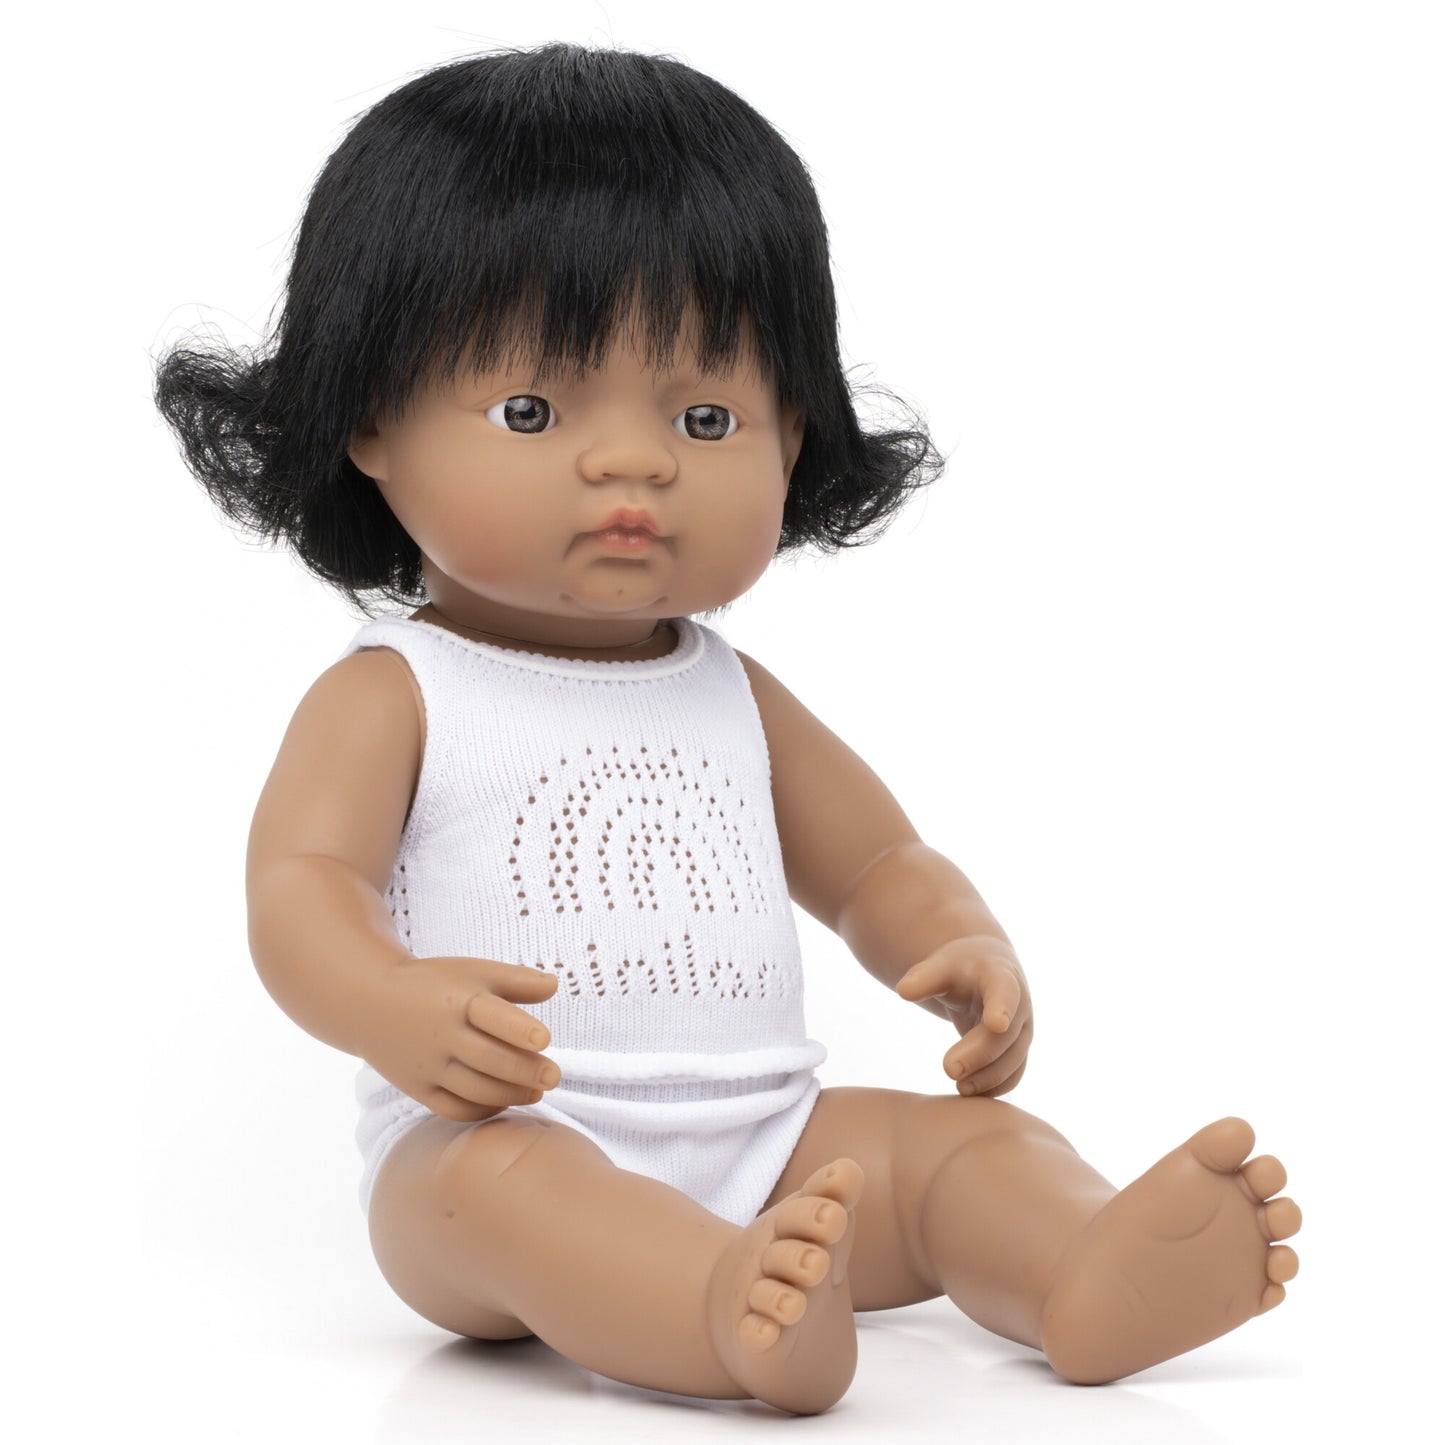 Miniland Baby Doll Hispanic Girl 15" Dolls